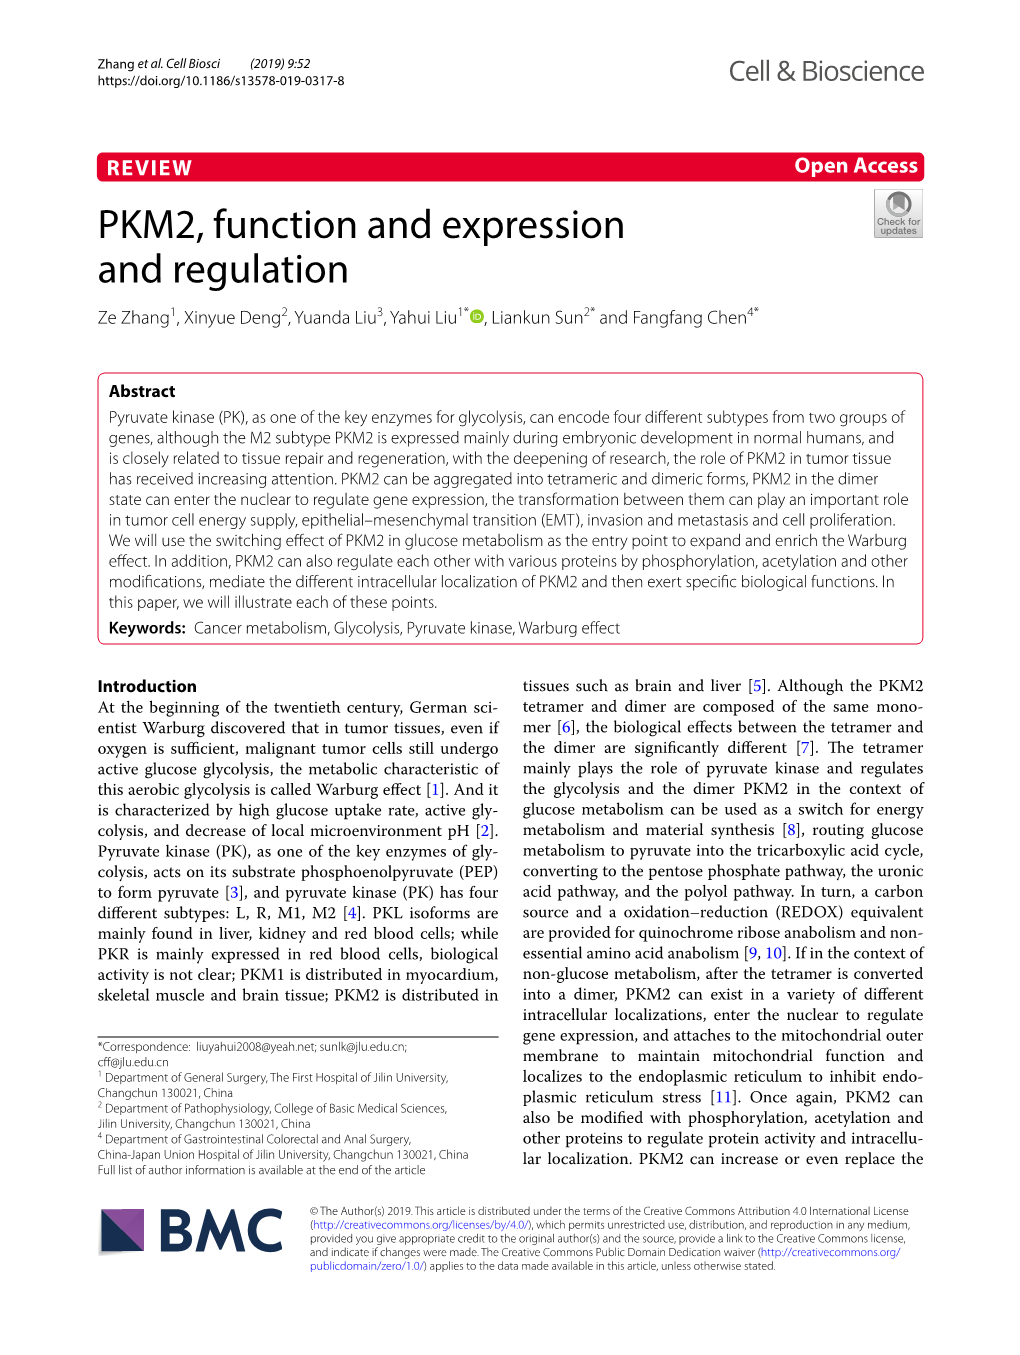 PKM2, Function and Expression and Regulation Ze Zhang1, Xinyue Deng2, Yuanda Liu3, Yahui Liu1* , Liankun Sun2* and Fangfang Chen4*